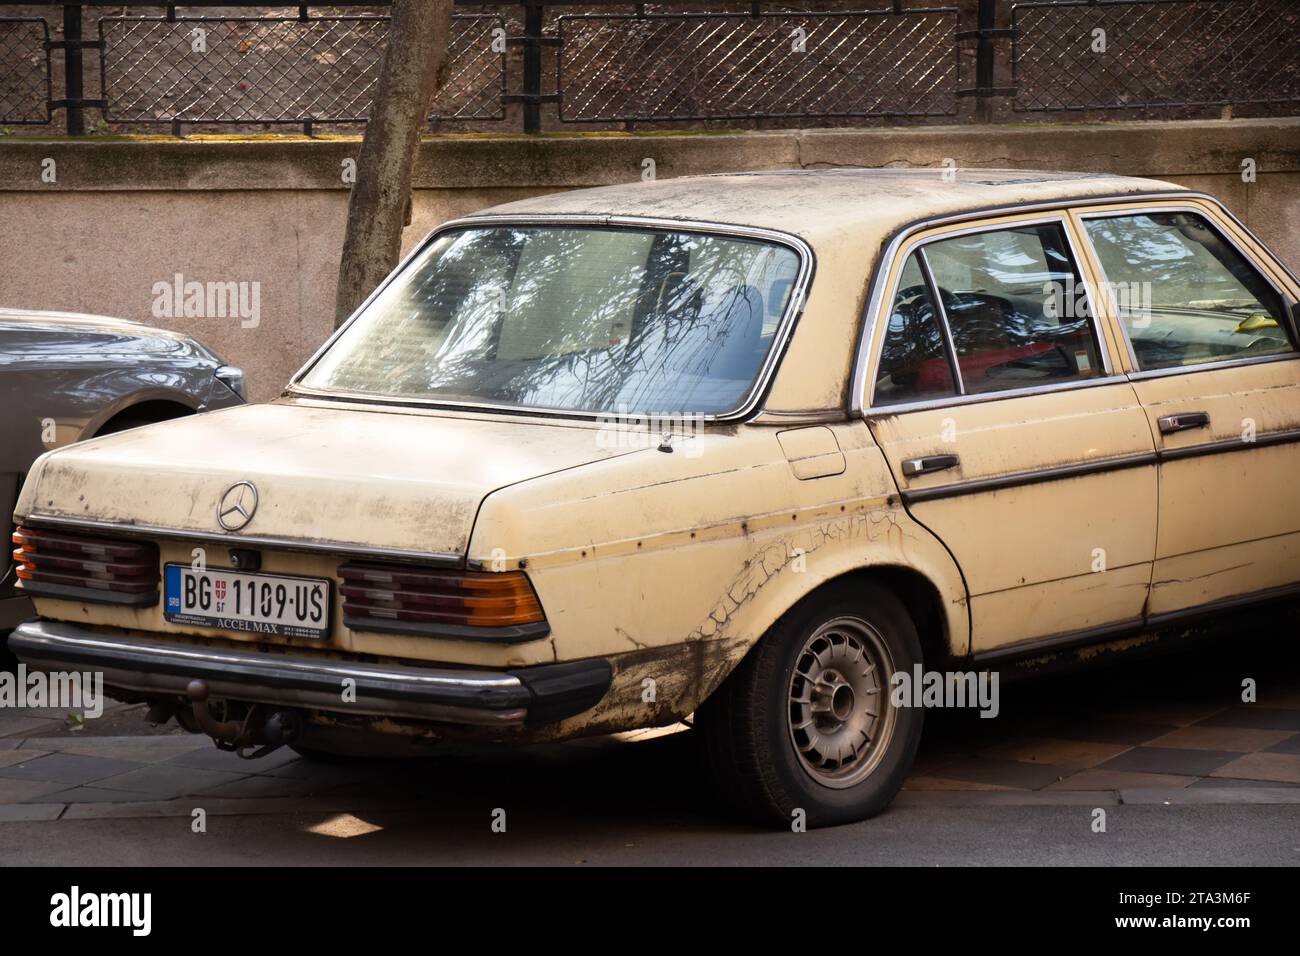 Patiné, rouillé beige vieille voiture garée, détail Banque D'Images